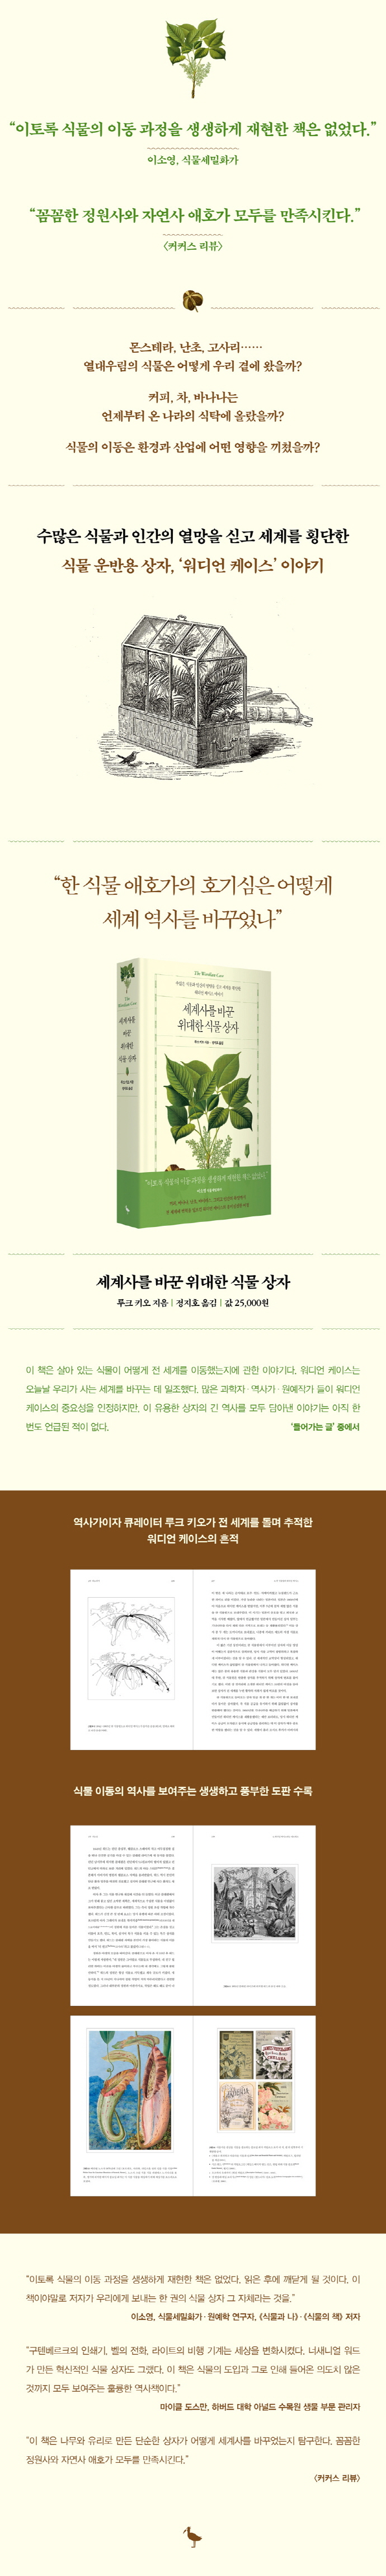 세계사를 바꾼 위대한 식물 상자(양장본 Hardcover) 도서 상세이미지